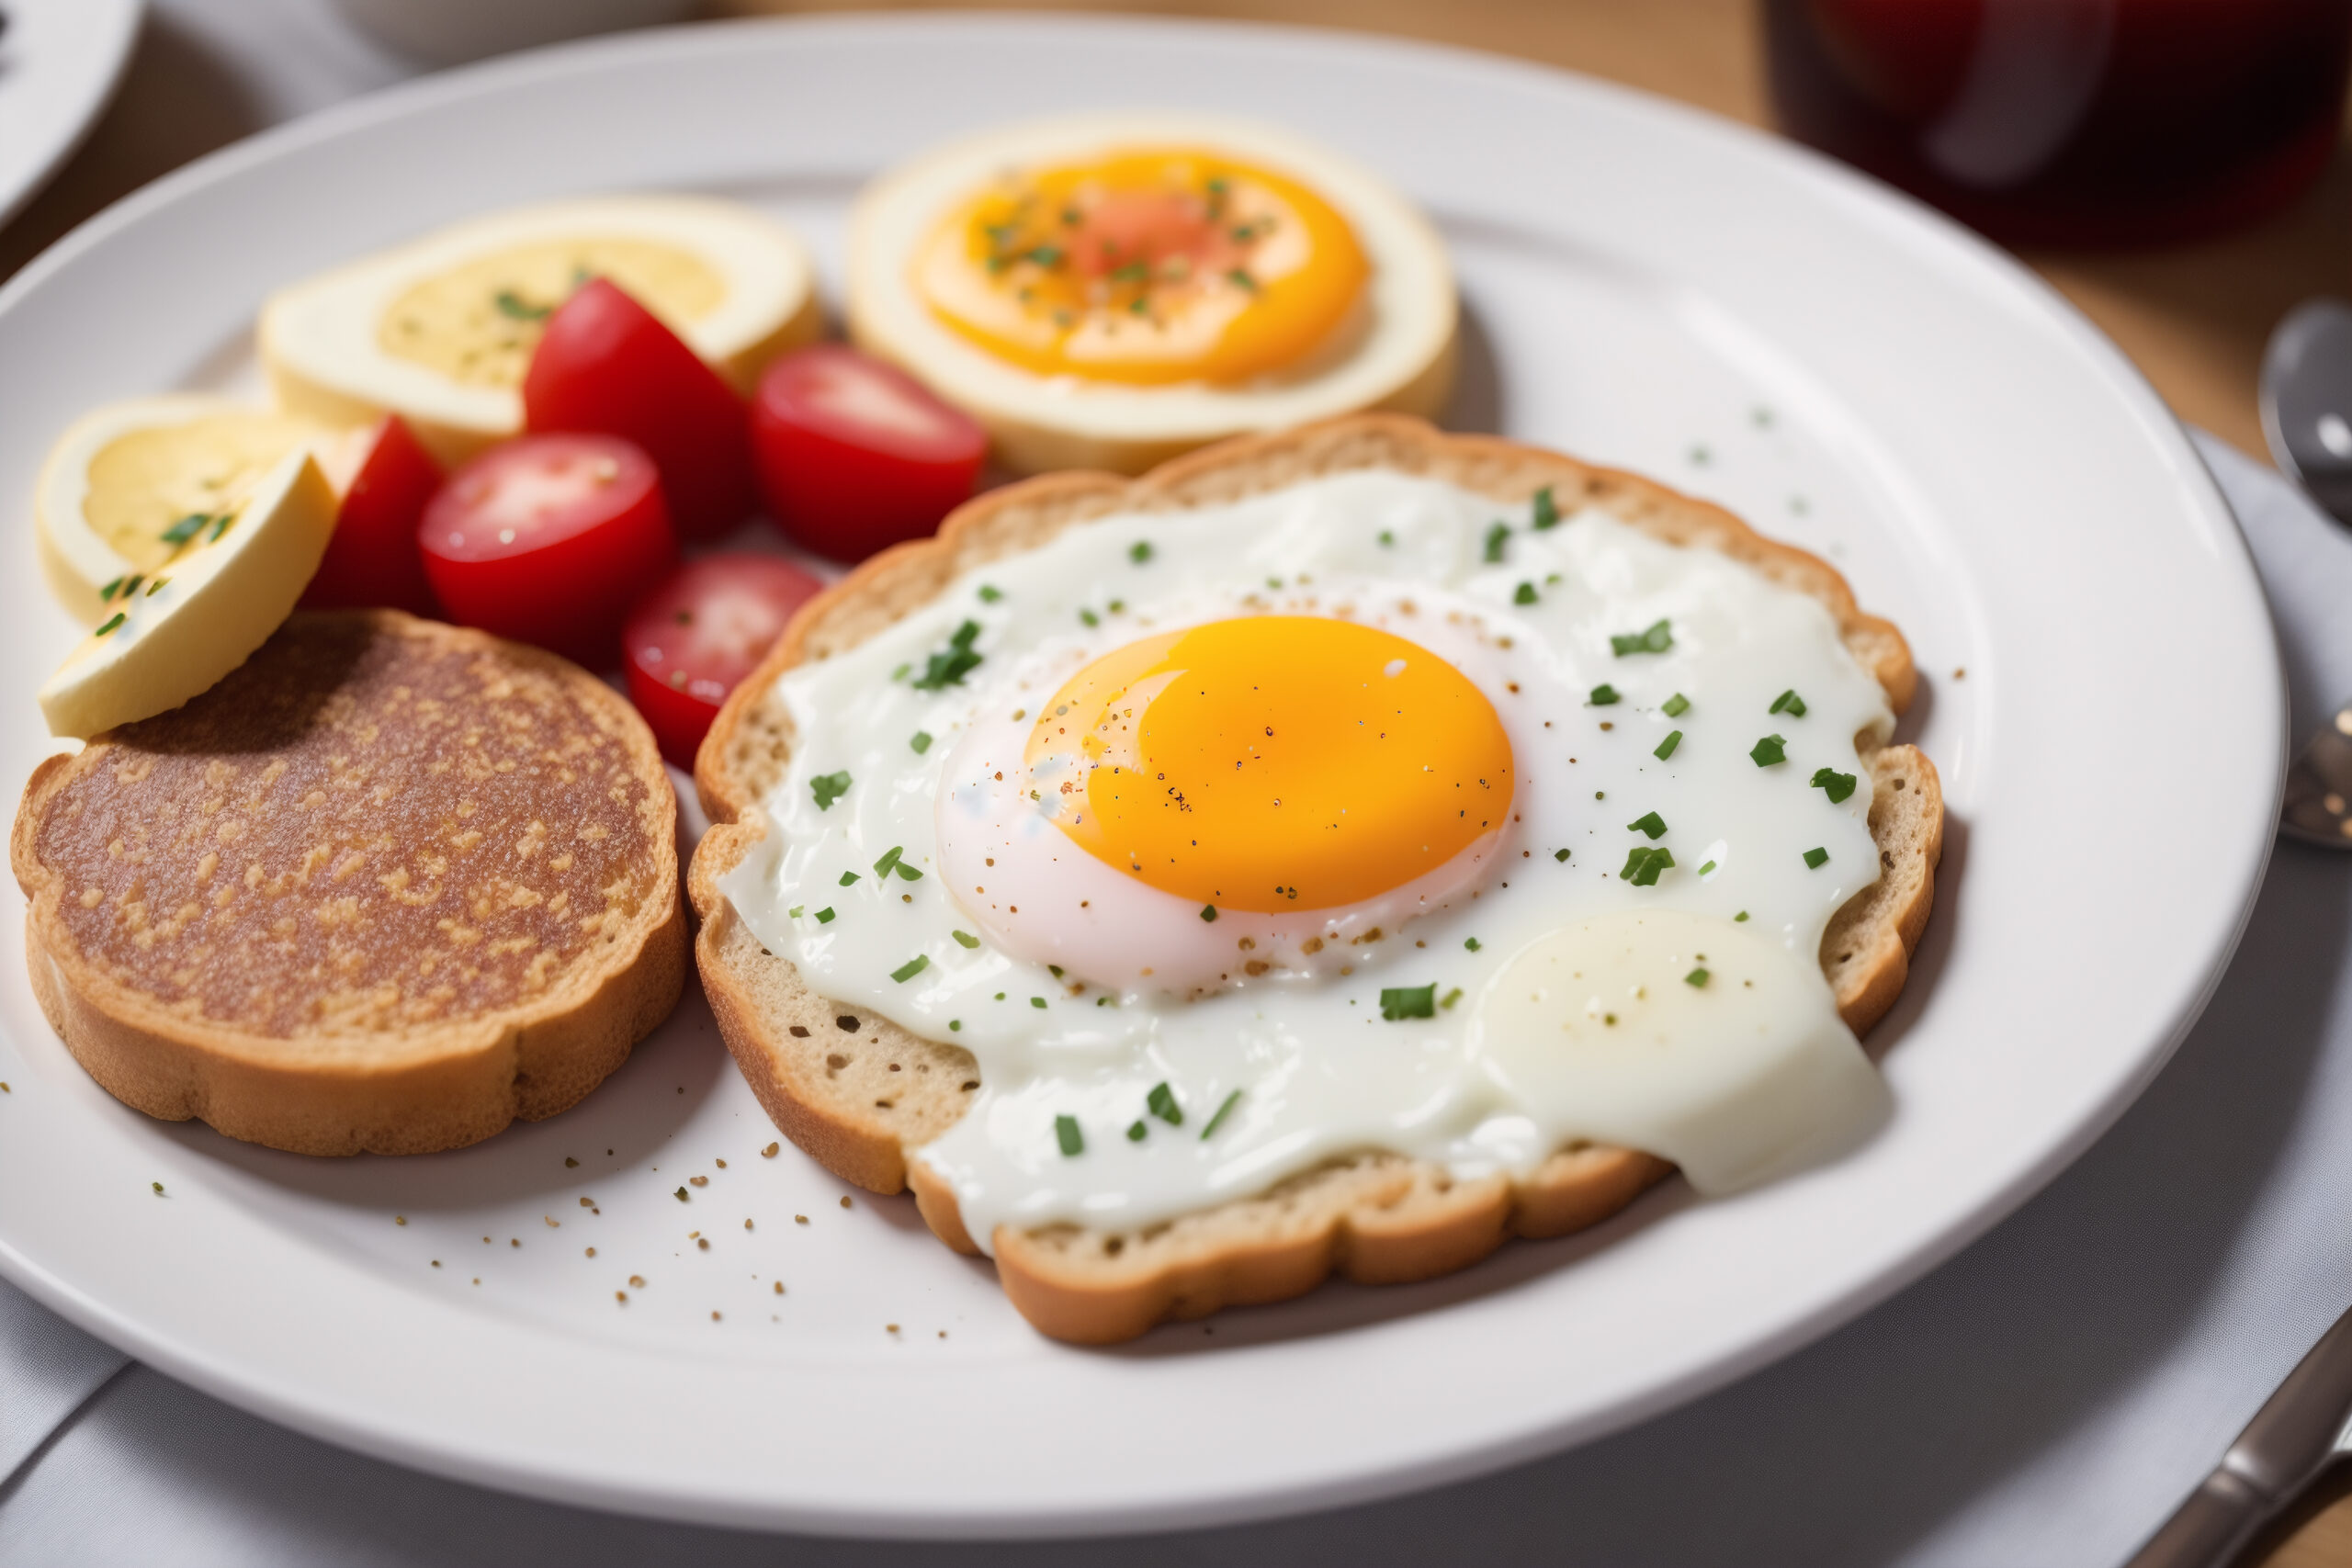 Na tym smakowitym obrazku możemy podziwiać lekkostrawną kolację z jajek w postaci pysznych tostów. Delikatnie upieczone kromki chleba są smarowane kremowym nadzieniem z jajek i ozdobione świeżymi ziołami. Ta wariacja na temat klasycznego śniadaniowego dania nie tylko wygląda apetycznie, ale również zapewnia lekkostrawny i pożywny posiłek na wieczór